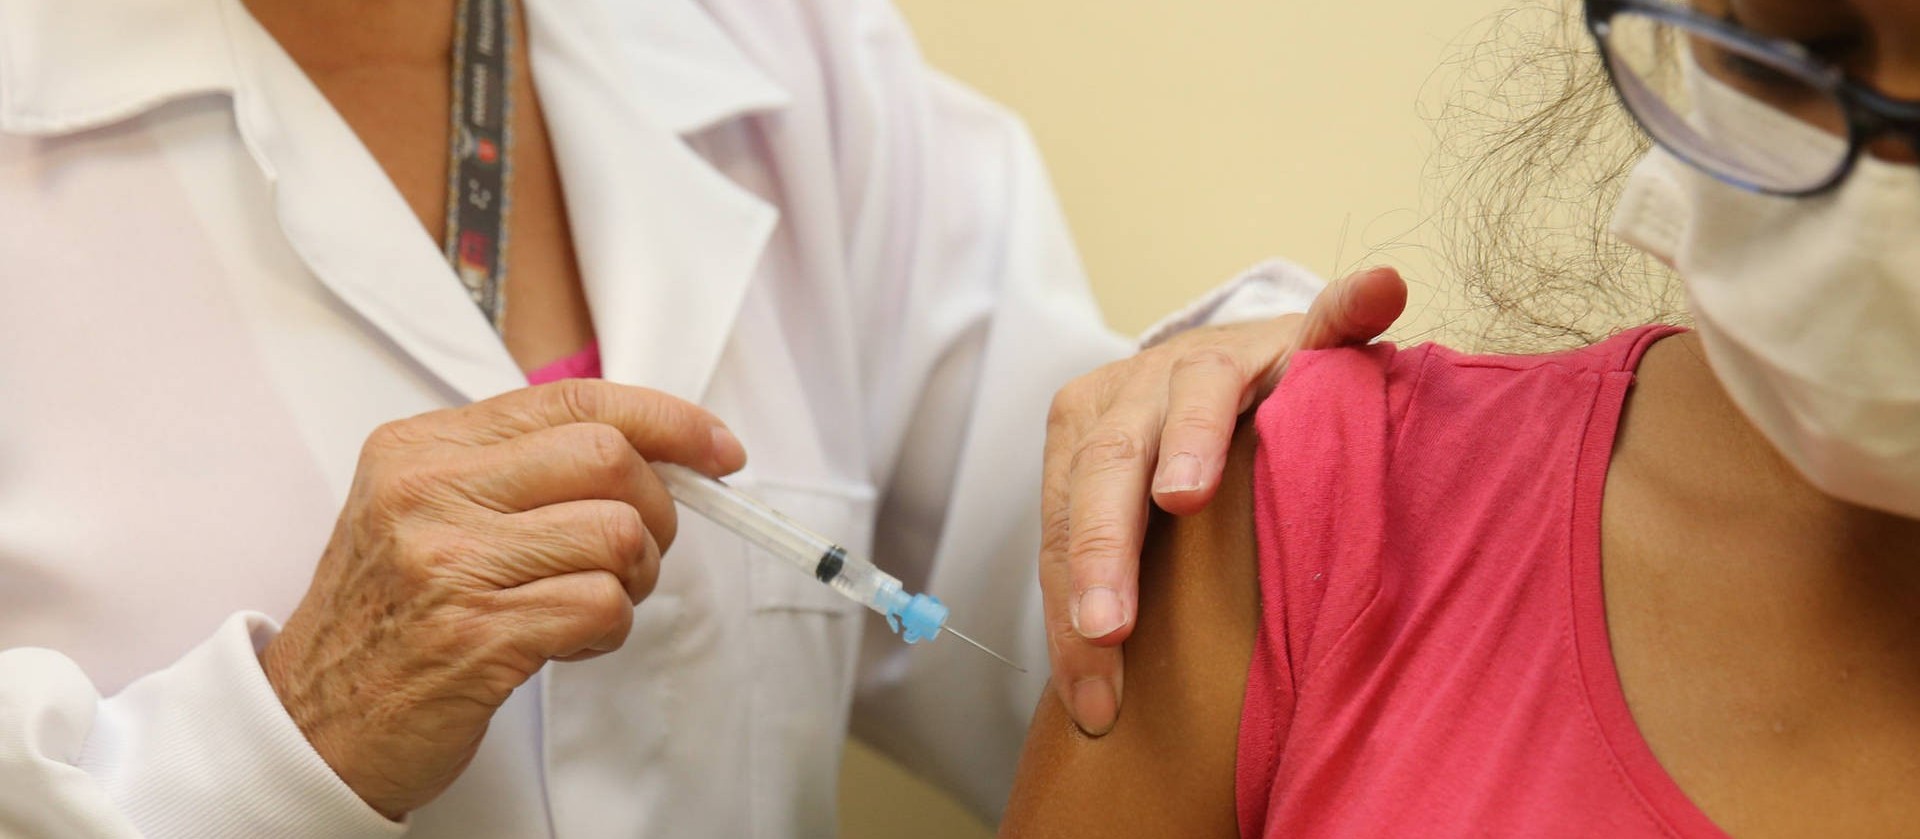 15ª Regional de Saúde faz balanço de quantos profissionais de saúde ainda não foram imunizados